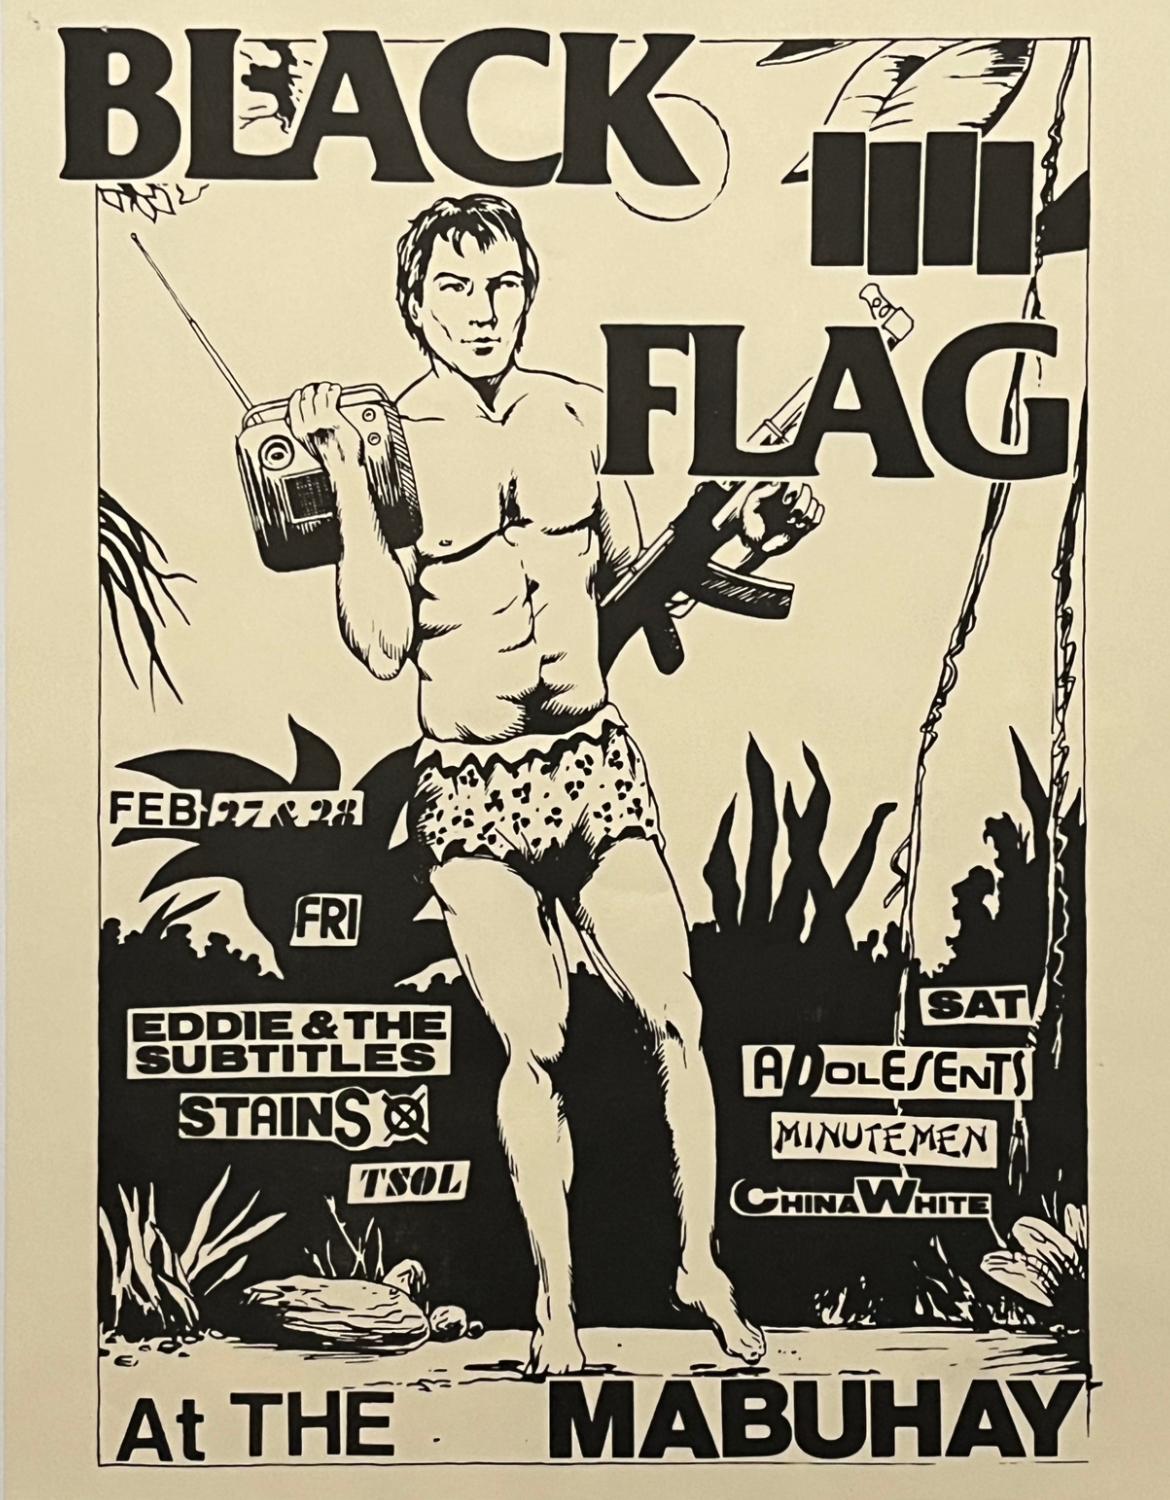 Raymond Pettibon Black Flag 1981:
Un raro volantino punk illustrato di Pettibon pubblicato in occasione di: Black Flag al Mabuhay: 27 febbraio - 28 febbraio 1981. Un concerto di Black Flag, Eddie and the Subtitles, Stains, TSOL, Adolescents,